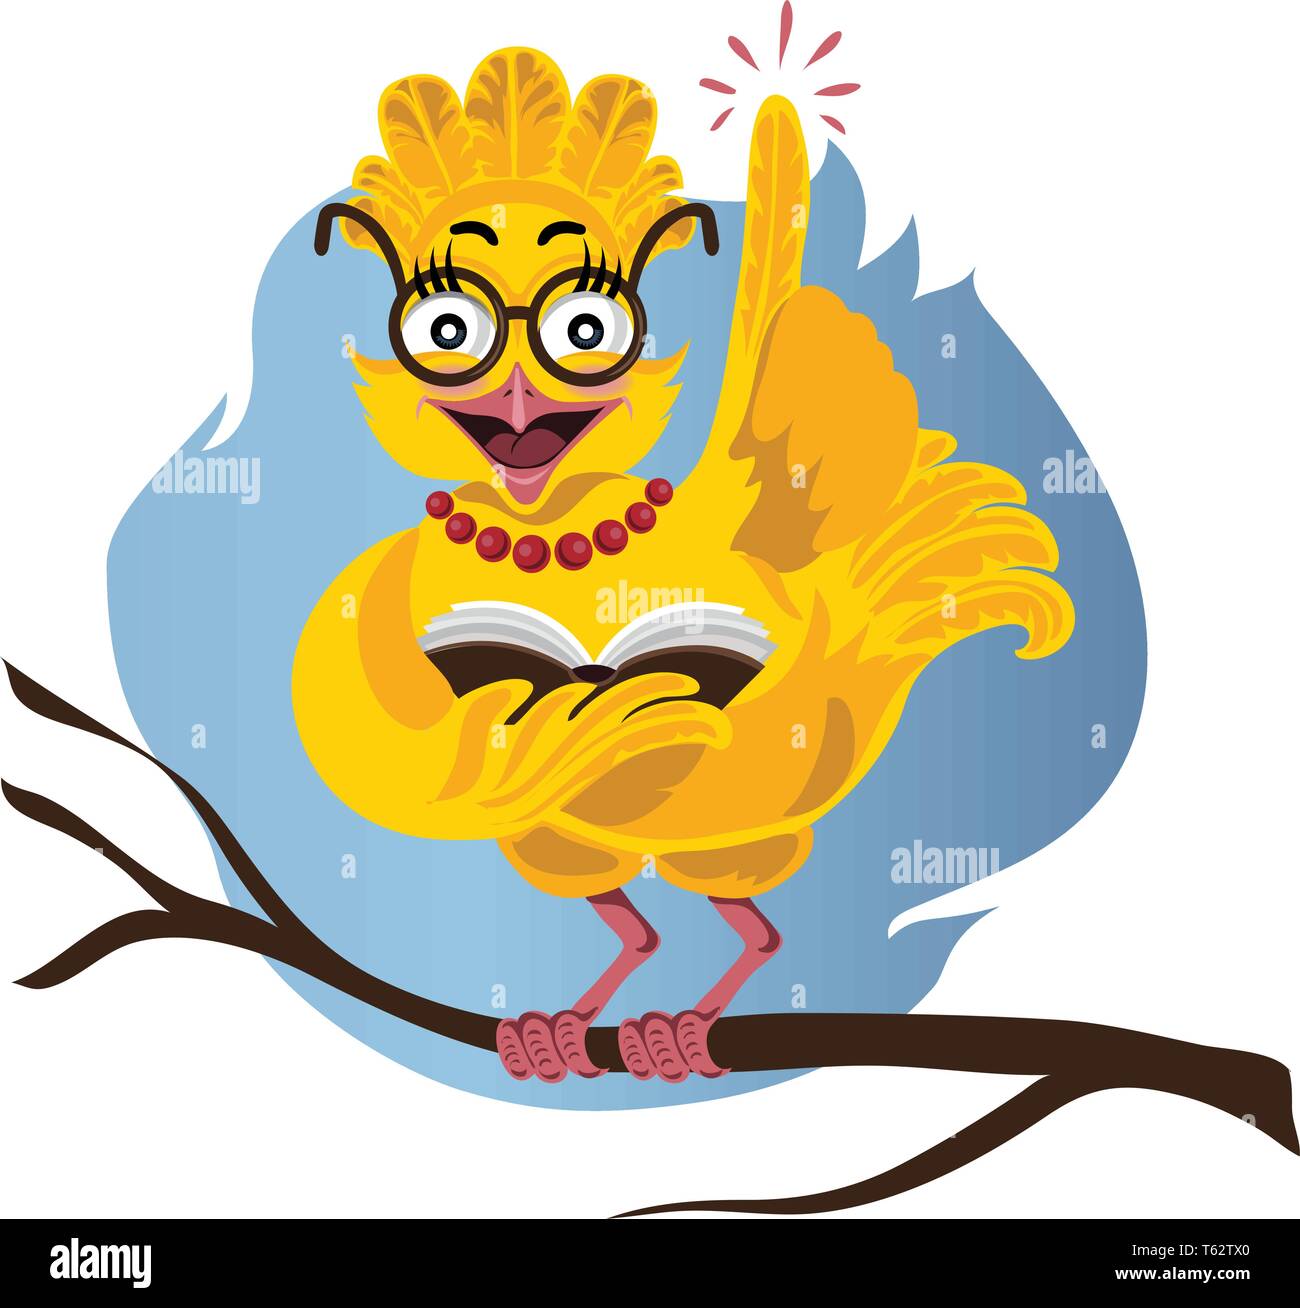 Dekorative cartoon owl Charakter, mit Brille sitzt auf einem Stapel Bücher, Vector Illustration Stock Vektor